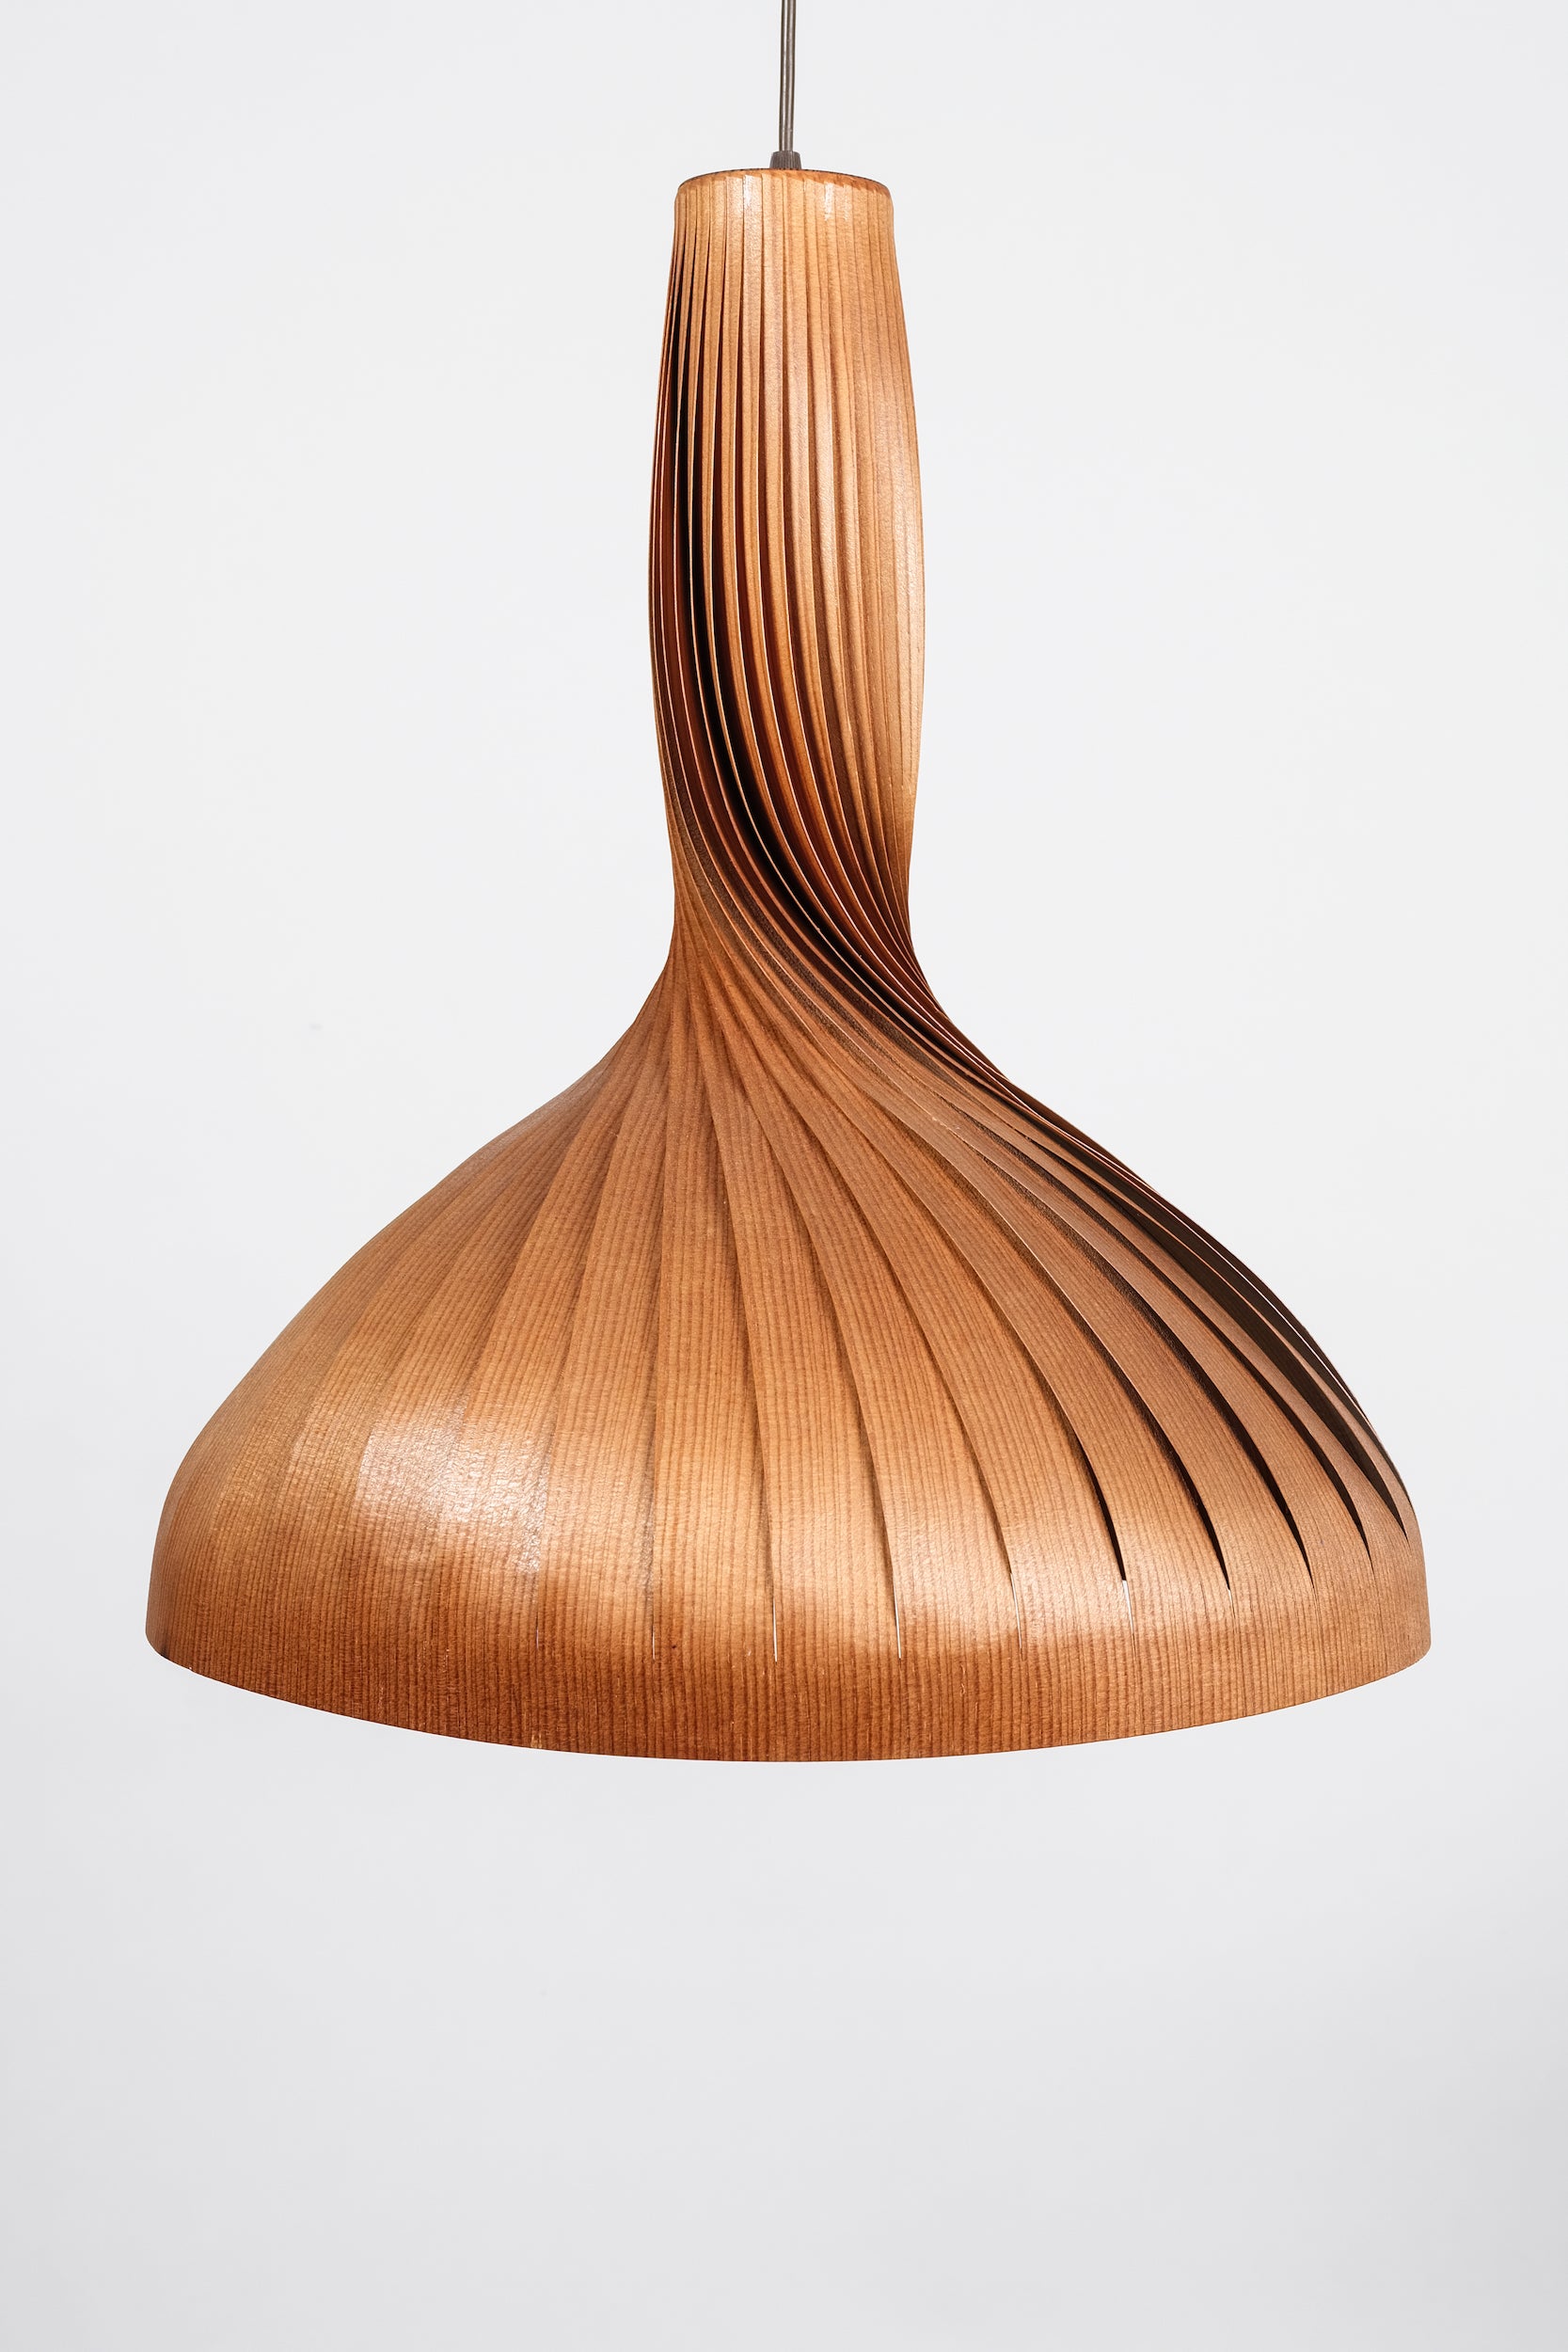 Hans Agne Jakobsson, Veneer Ceiling Lamp, Markaryd, 60s